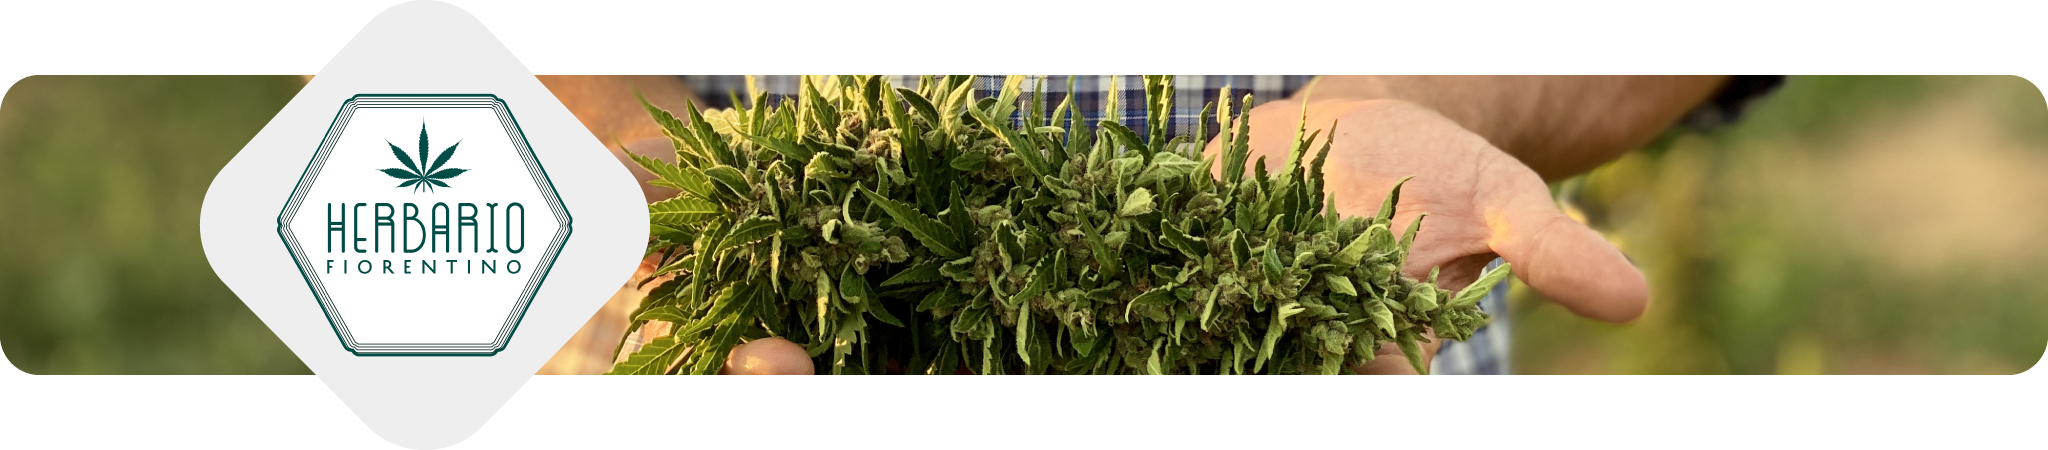 herbario-fiorentino-erba-legale-weediamo-cannabis-delivery-firenze-produttore-locale